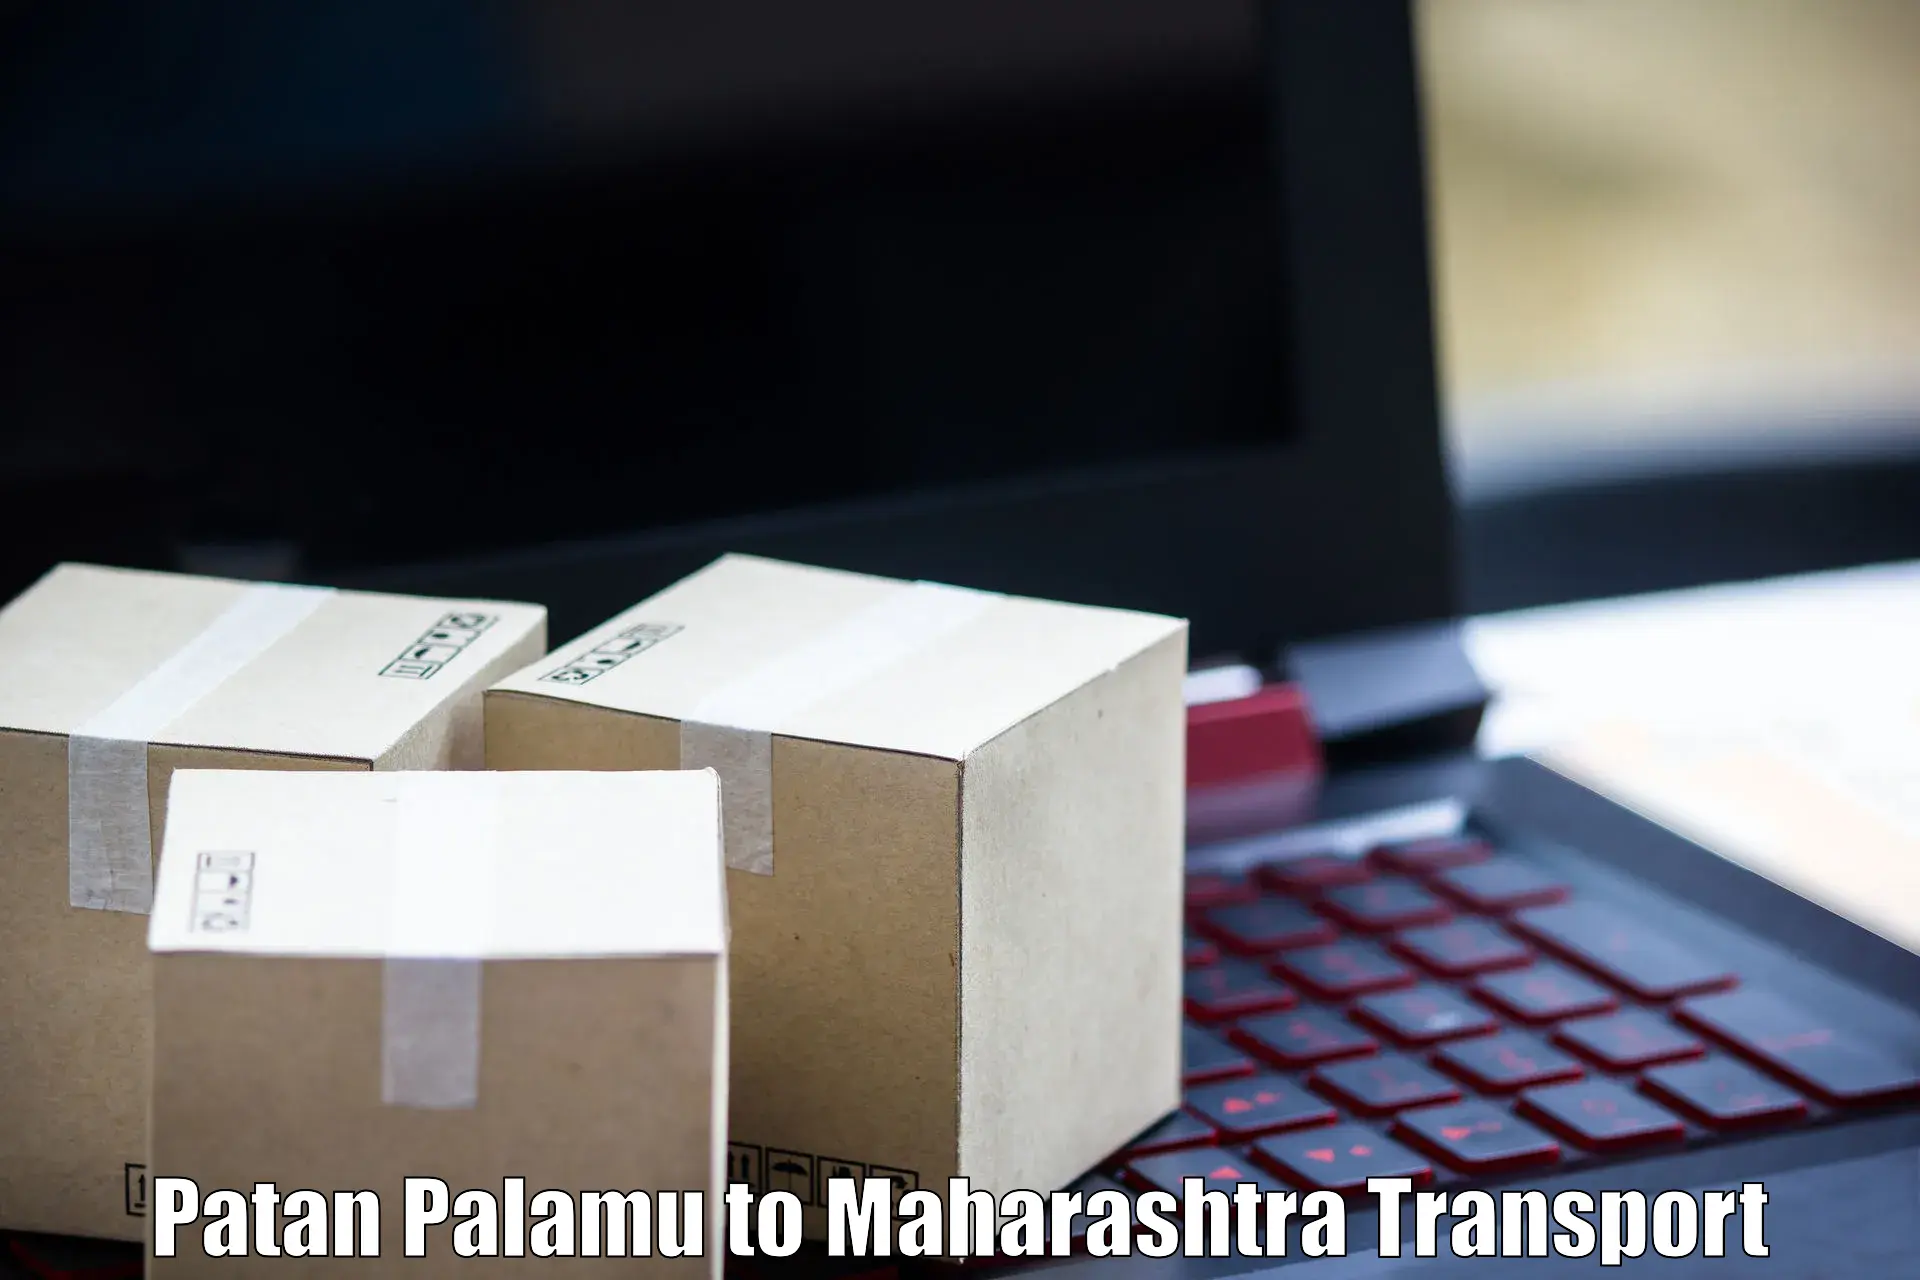 Online transport service Patan Palamu to Kalbadevi